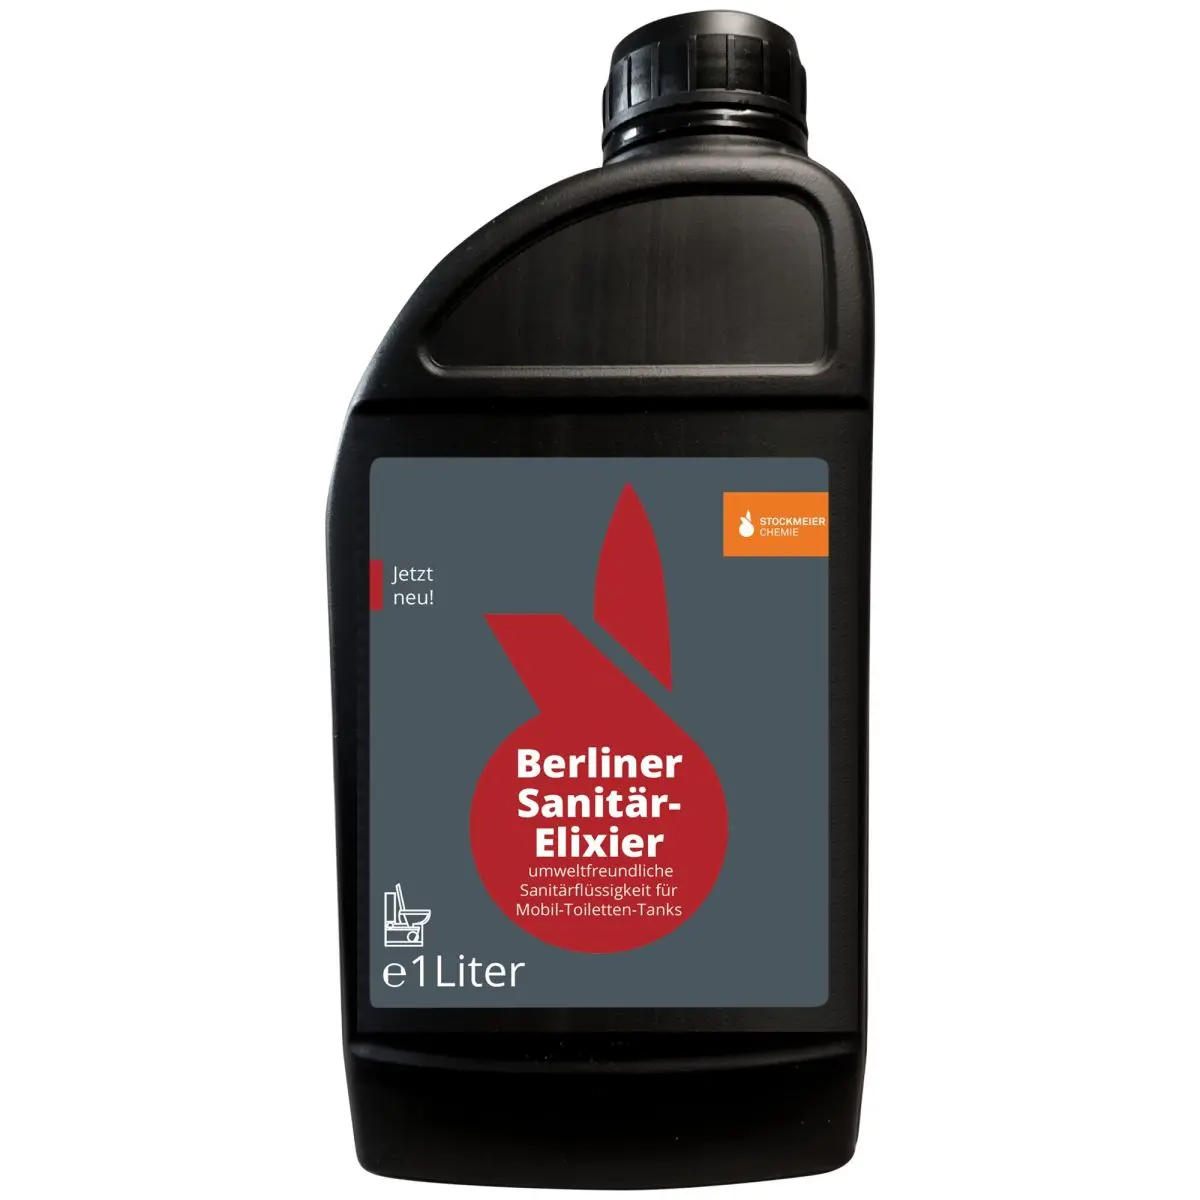 Berliner Sanitr-Elexier - umweltfreundlich  und Kennzeichnungsfrei